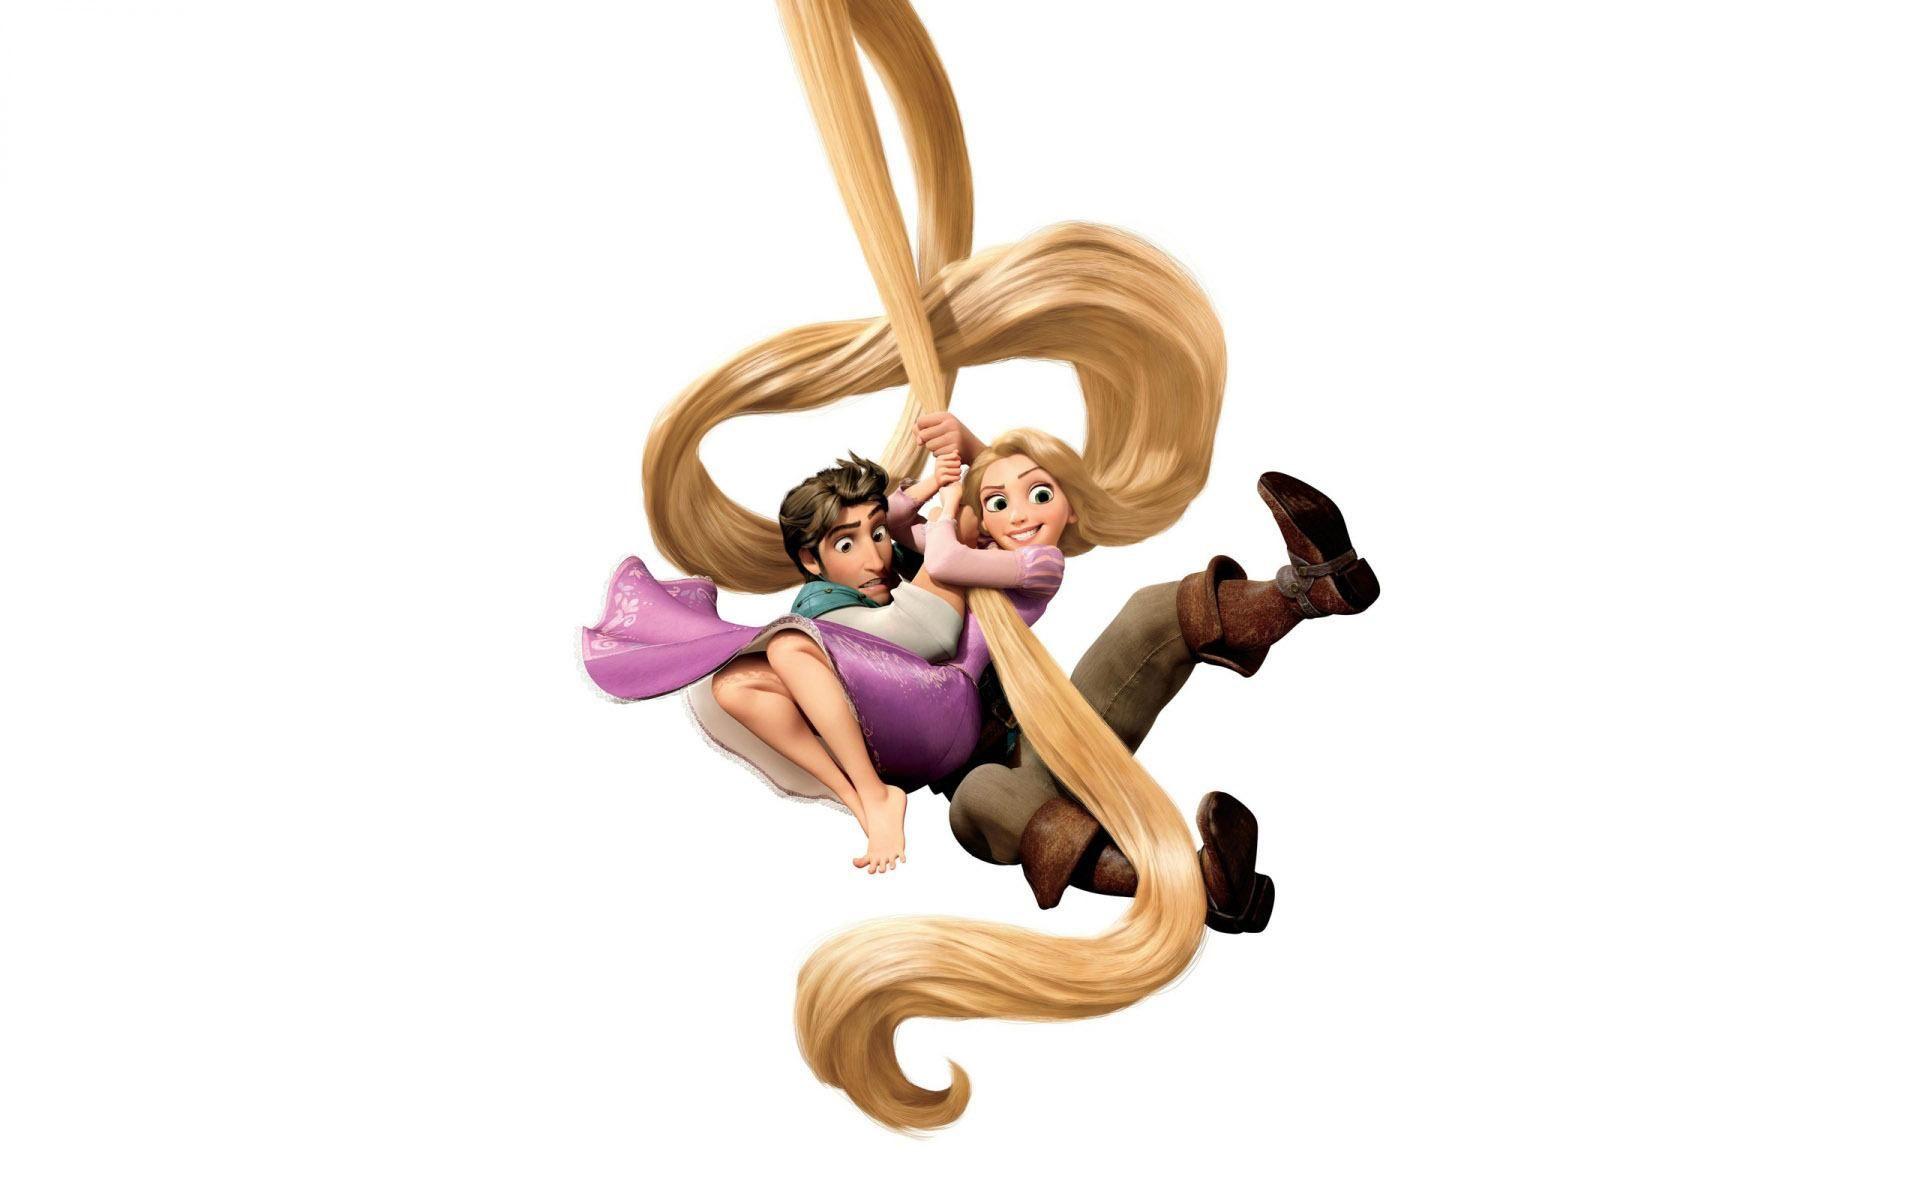 Rapunzel Flynn Cartoons Rapunzel and flynn rider tangled Rider